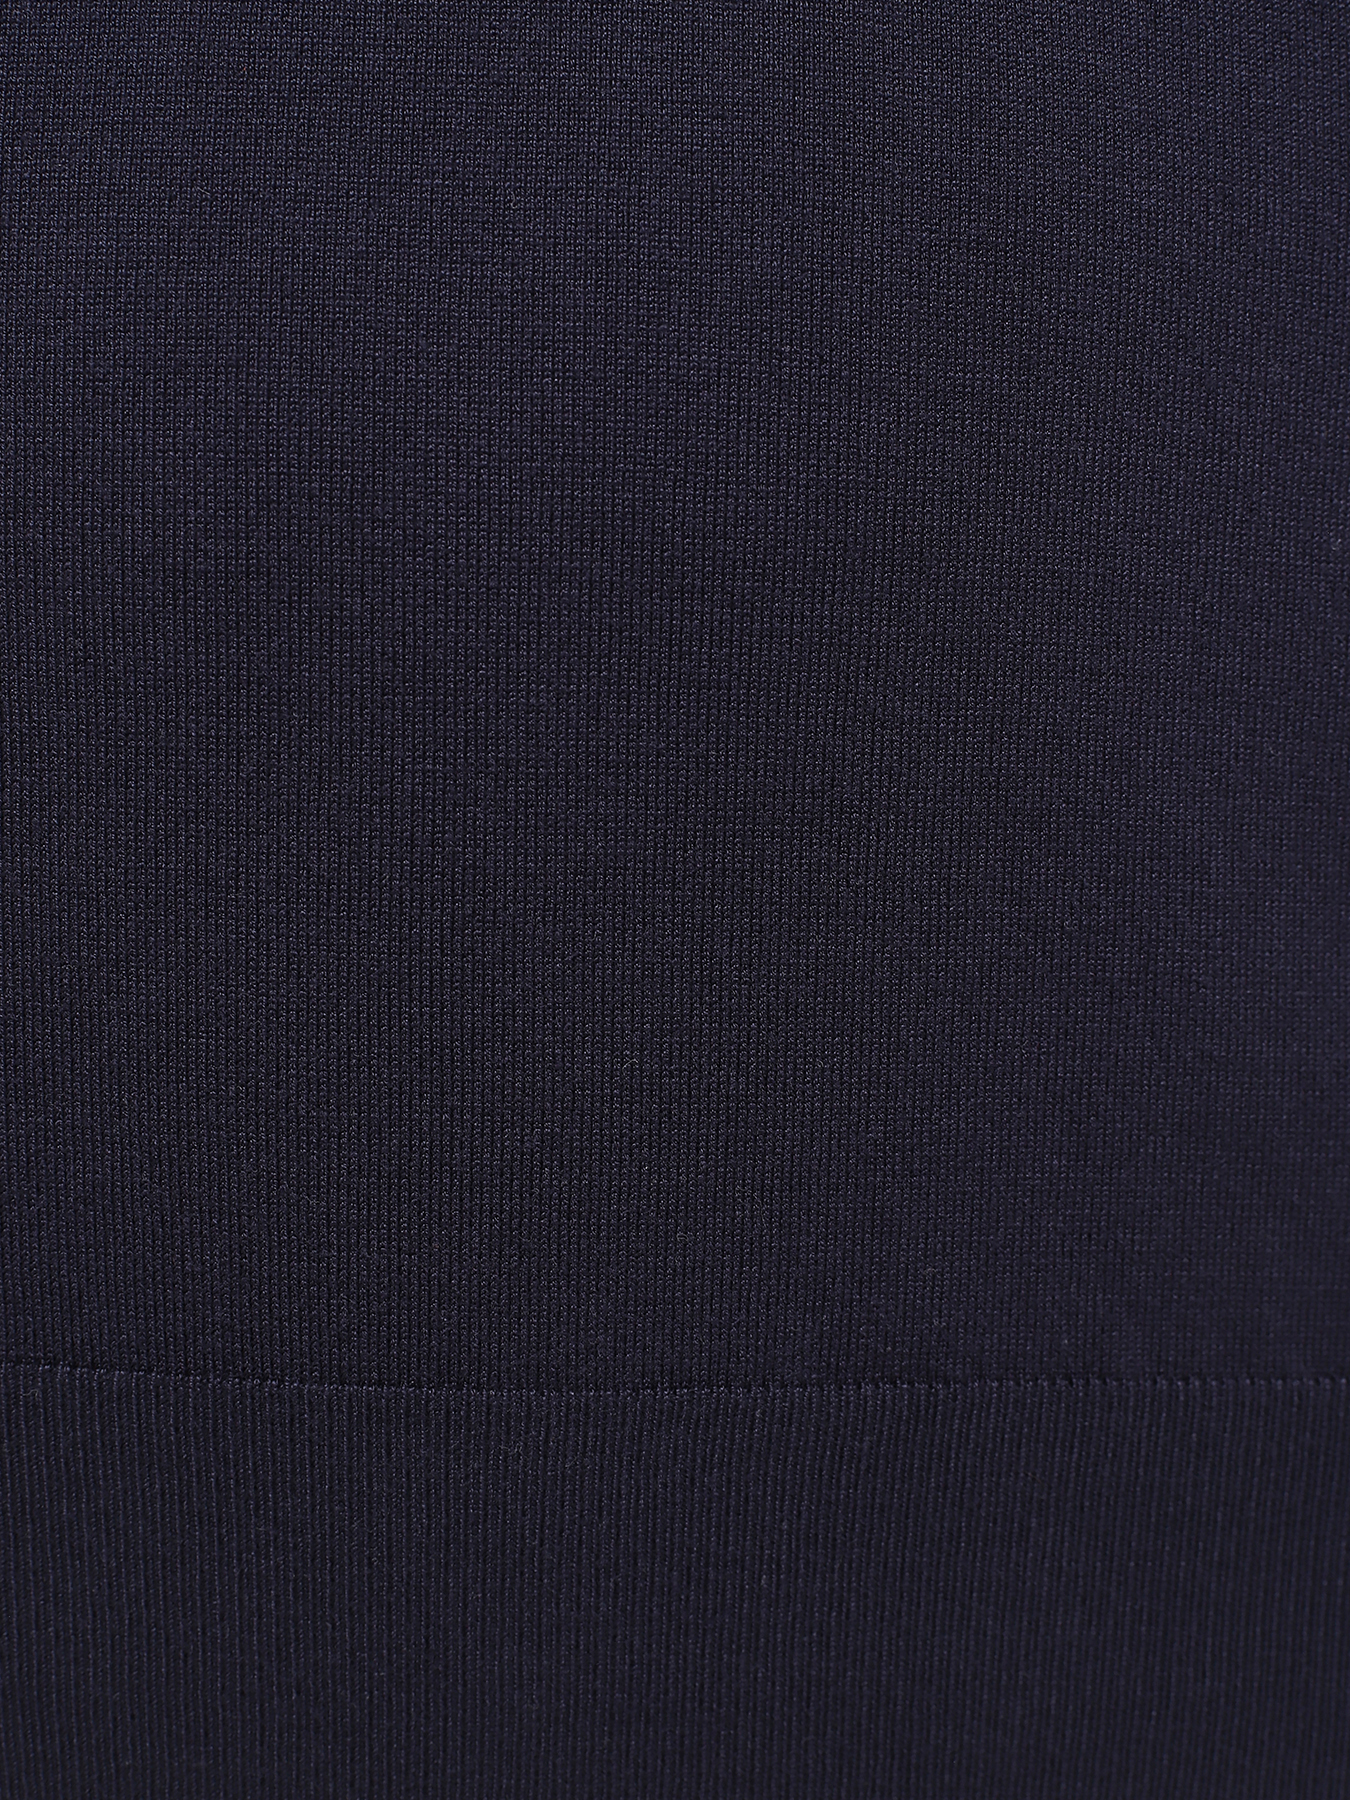 Джемпер Trussardi 435525-044, цвет темно-синий, размер 50-52 - фото 4